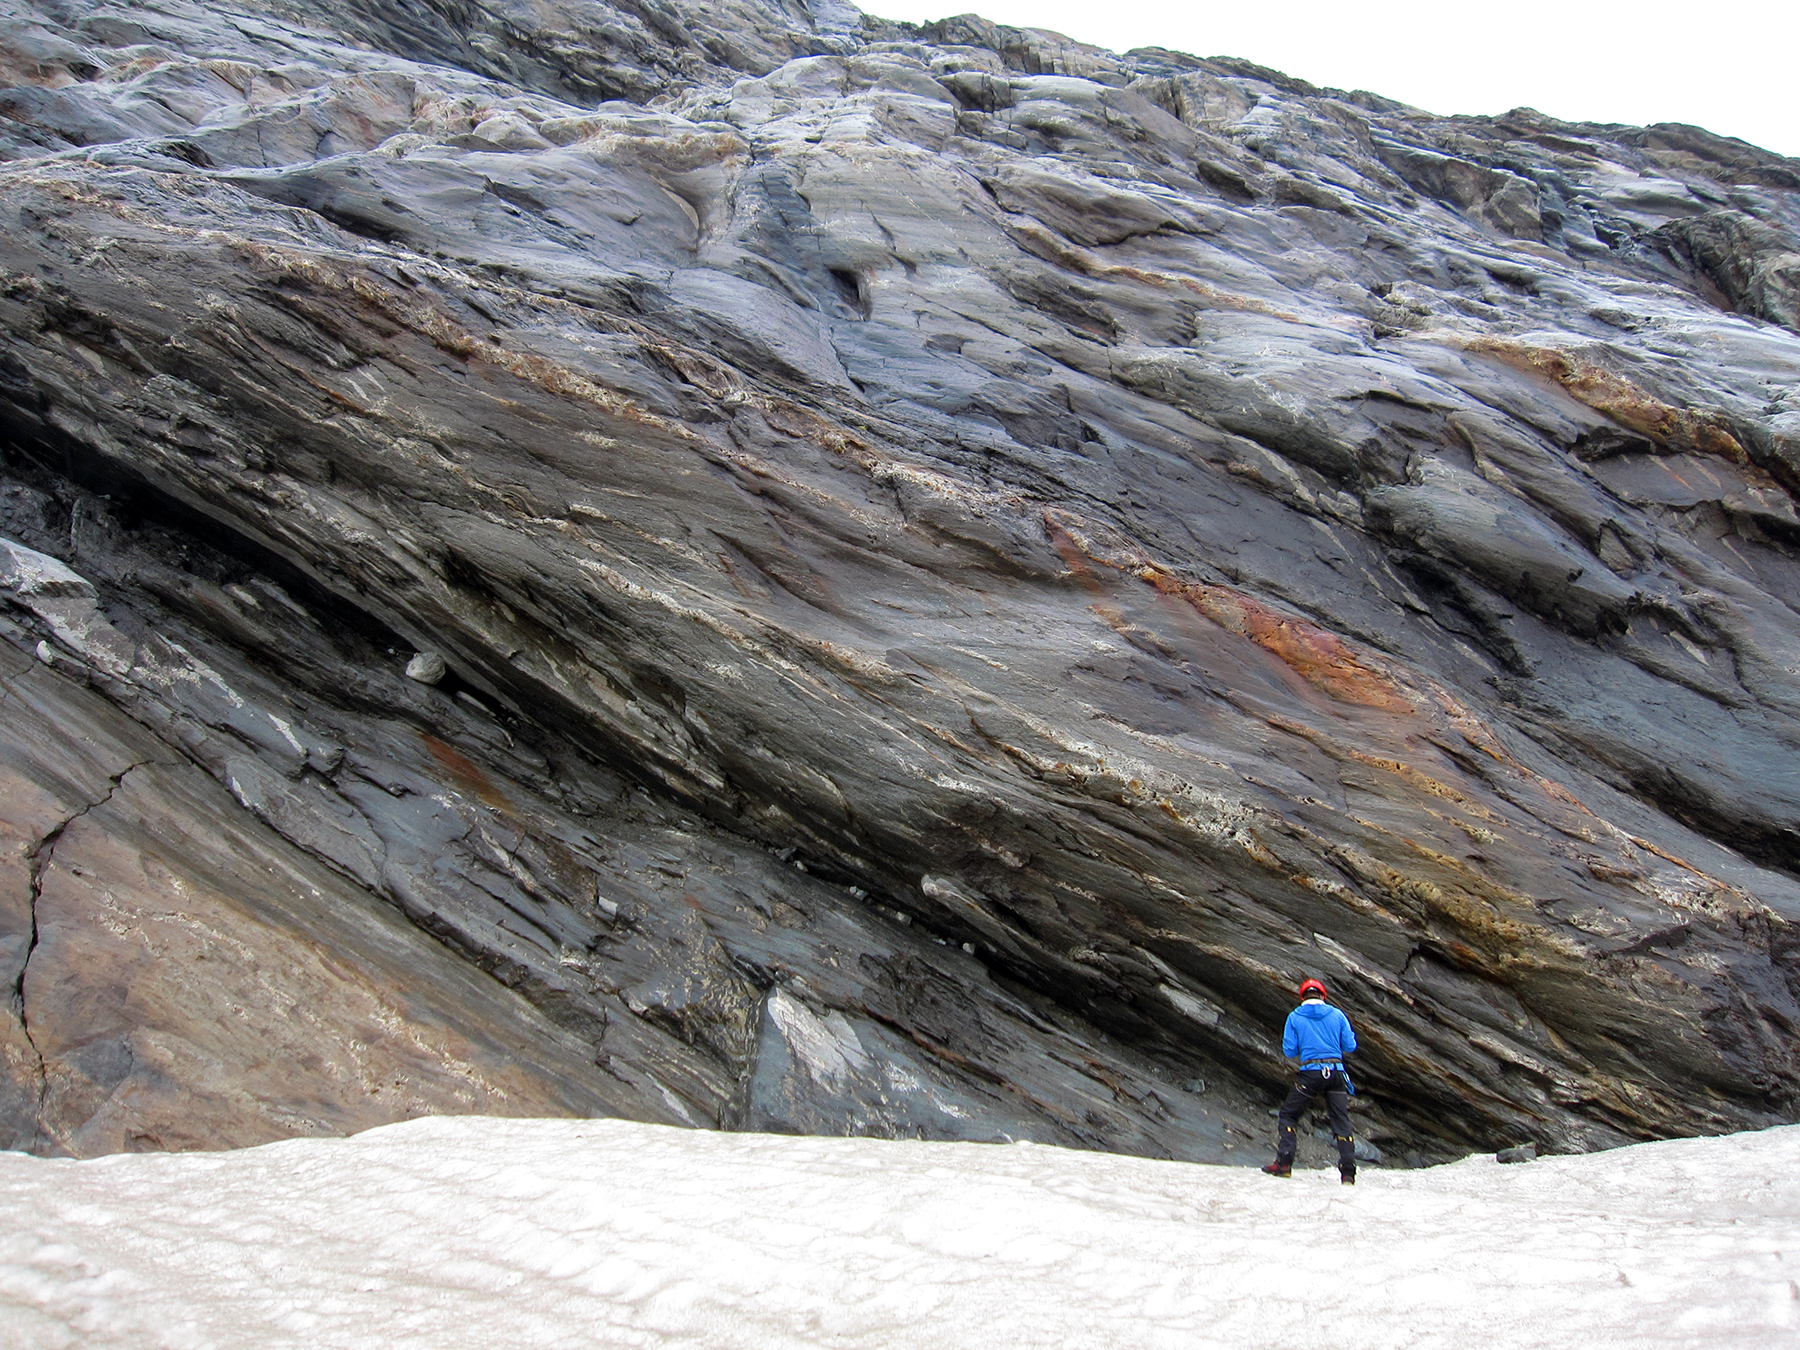 Angeseilt, untersucht Ferdinando Musso Piantelli vom Aletschgletscher aus eine Störungszone im kristallinen Festgestein. Bild: Marco Herwegh